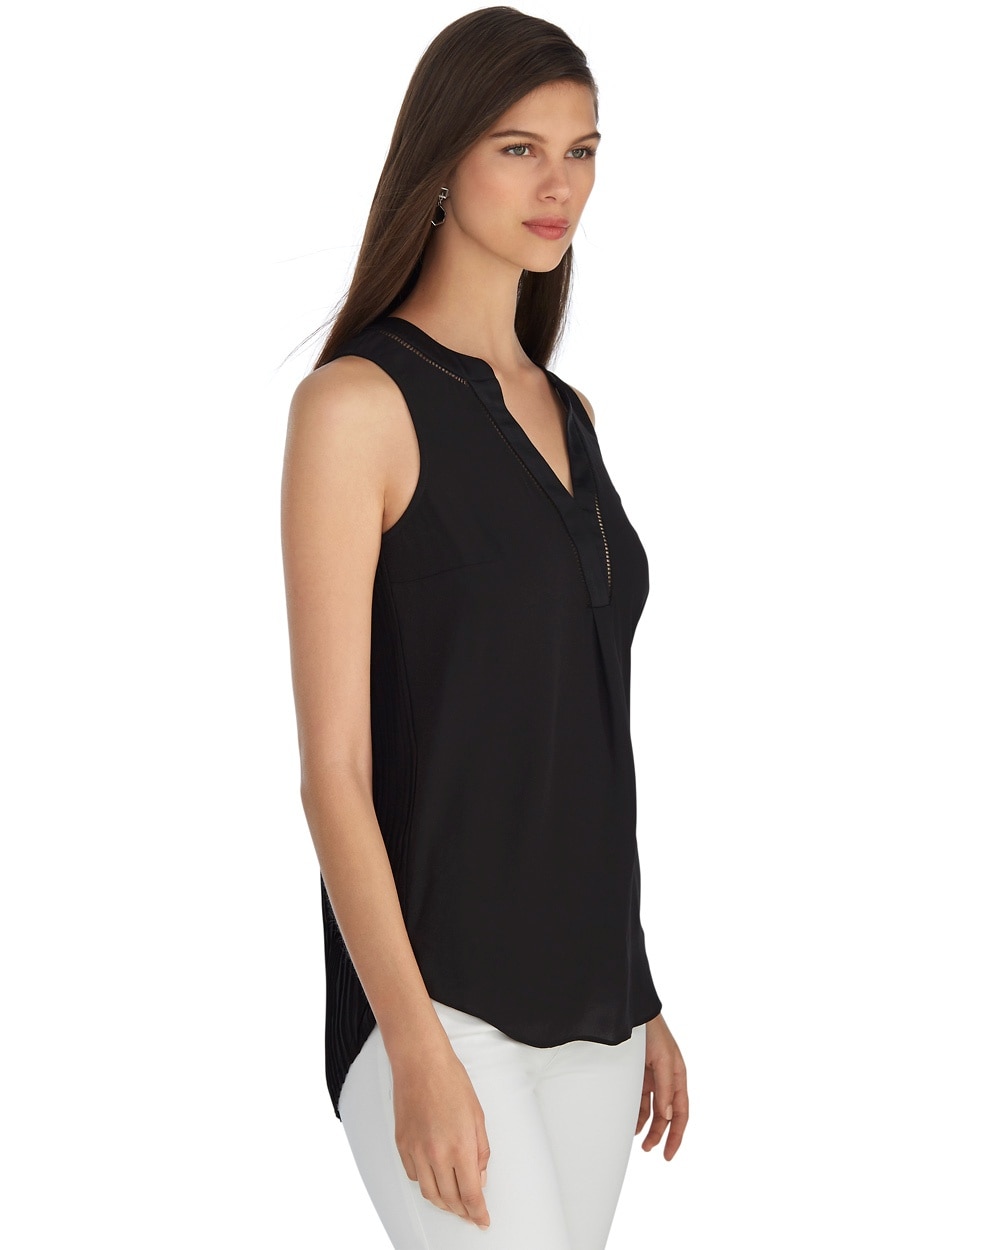 Iconic Starlet Sleeveless Black Shirt - White House Black Market